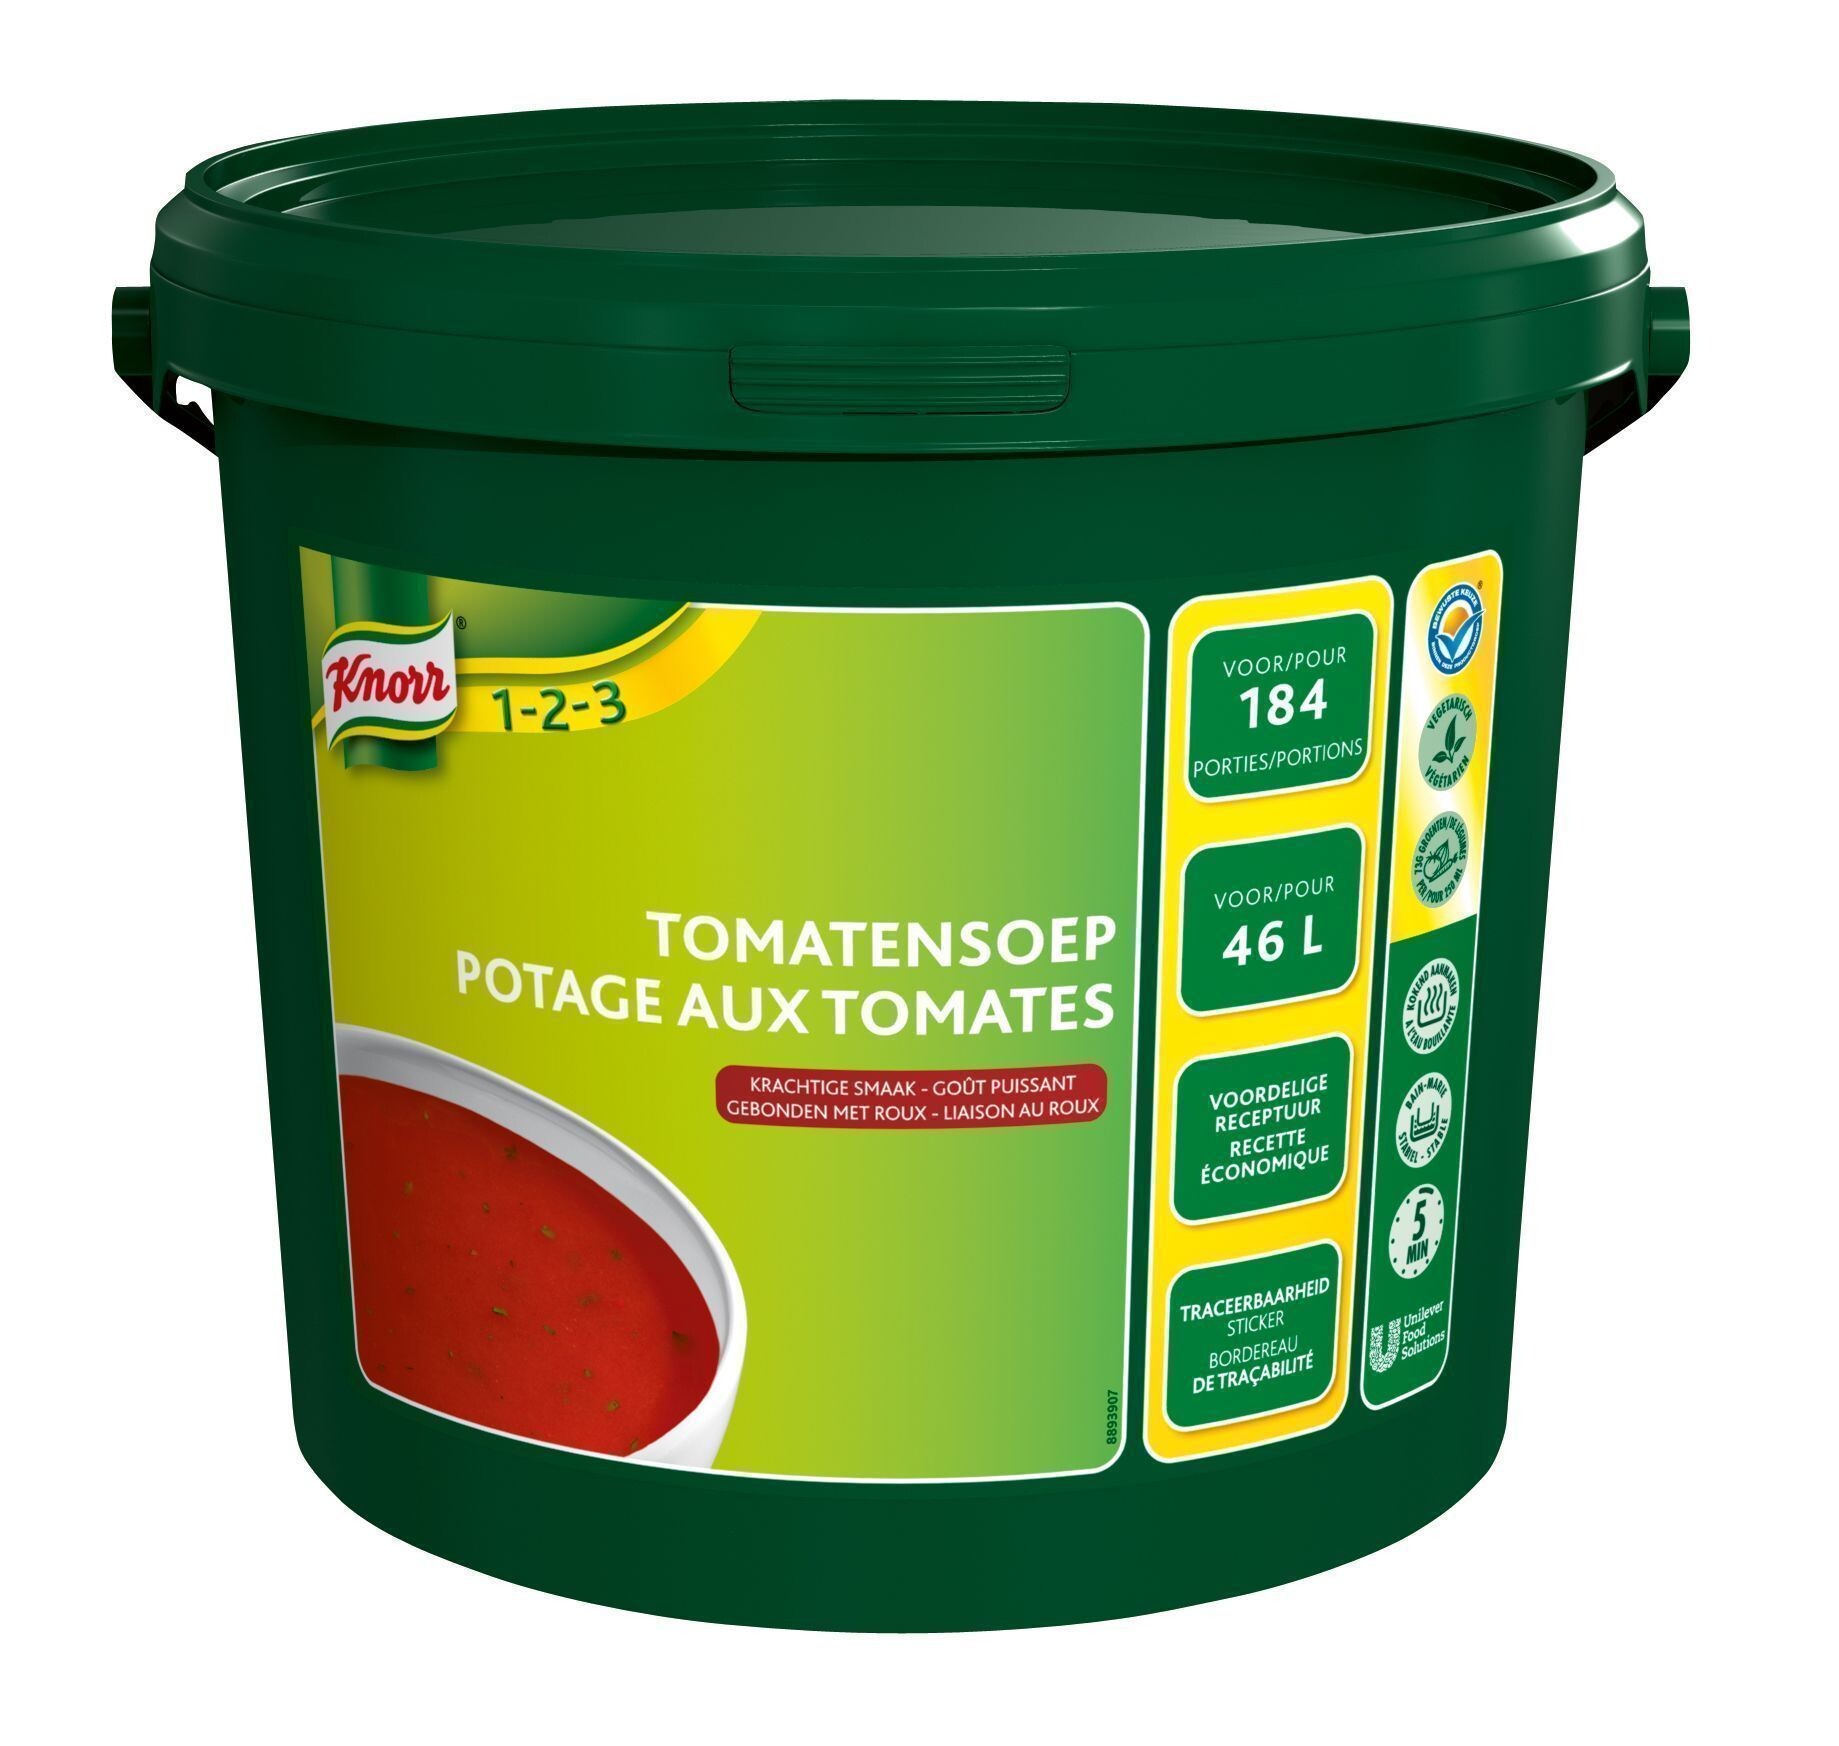 Knorr tomatensoep 10kg Knorr poeder